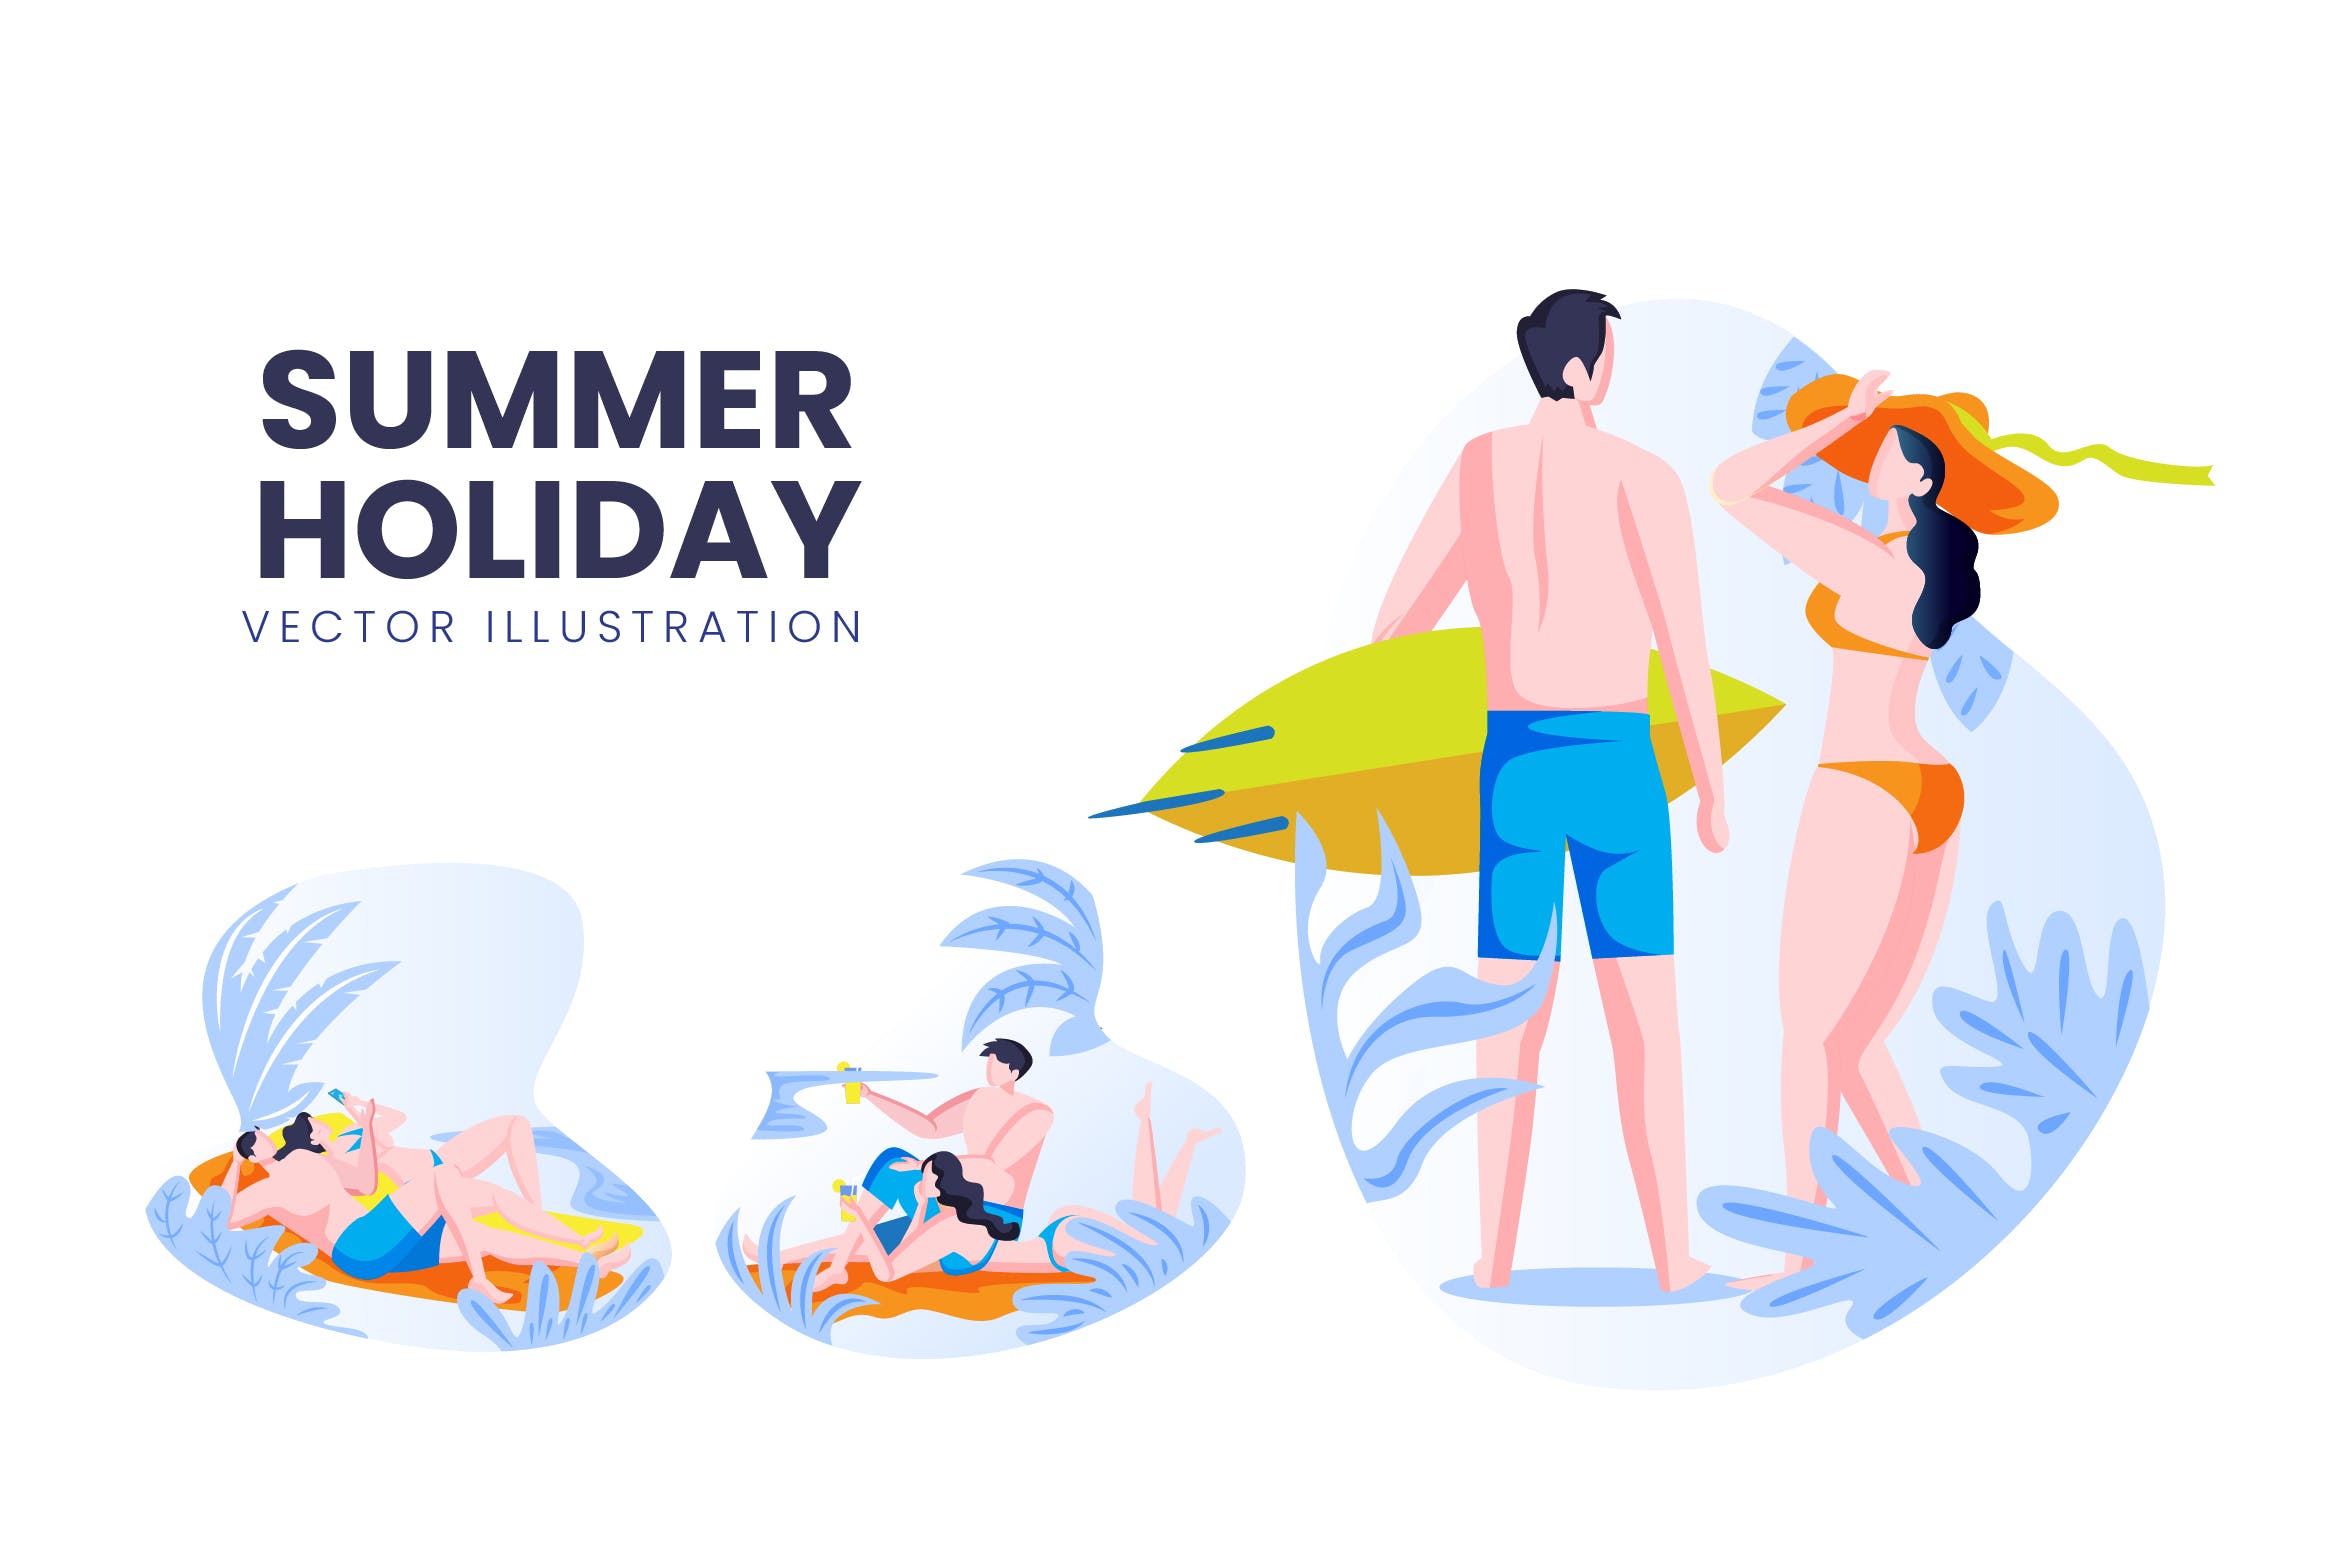 海滩度假主题人物形象第一素材精选手绘插画矢量素材 Summer Holiday Vector Character Set插图